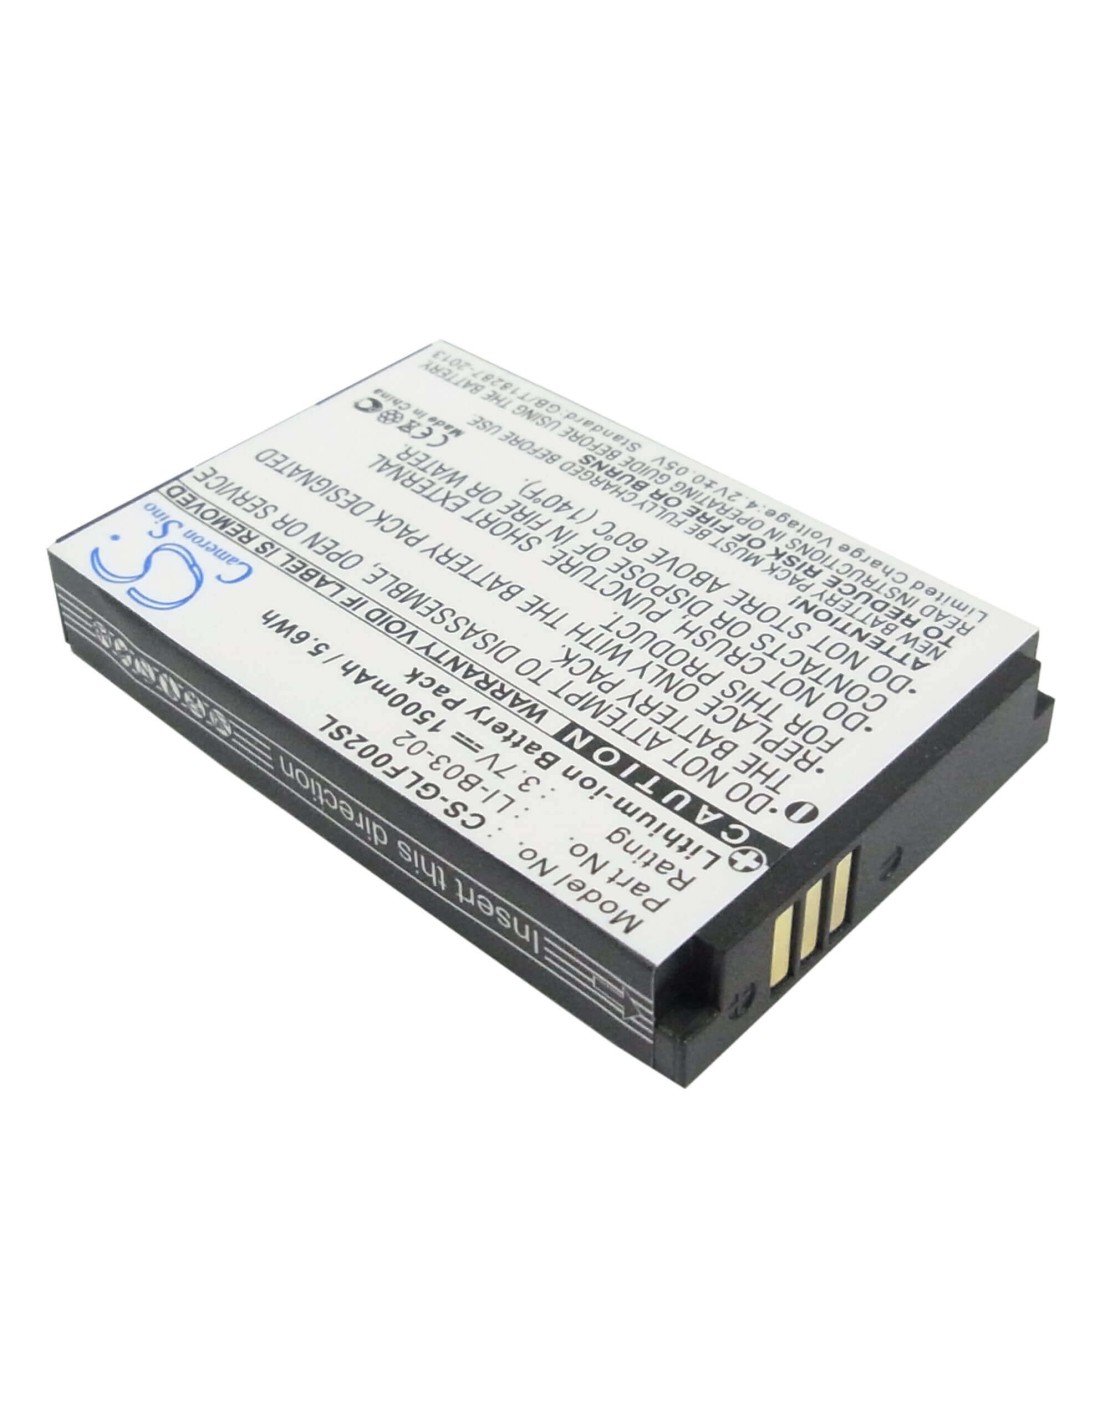 Battery for Golf Buddy Gb3, Platinum, Platinum Range Finder 3.7V, 1500mAh - 5.55Wh